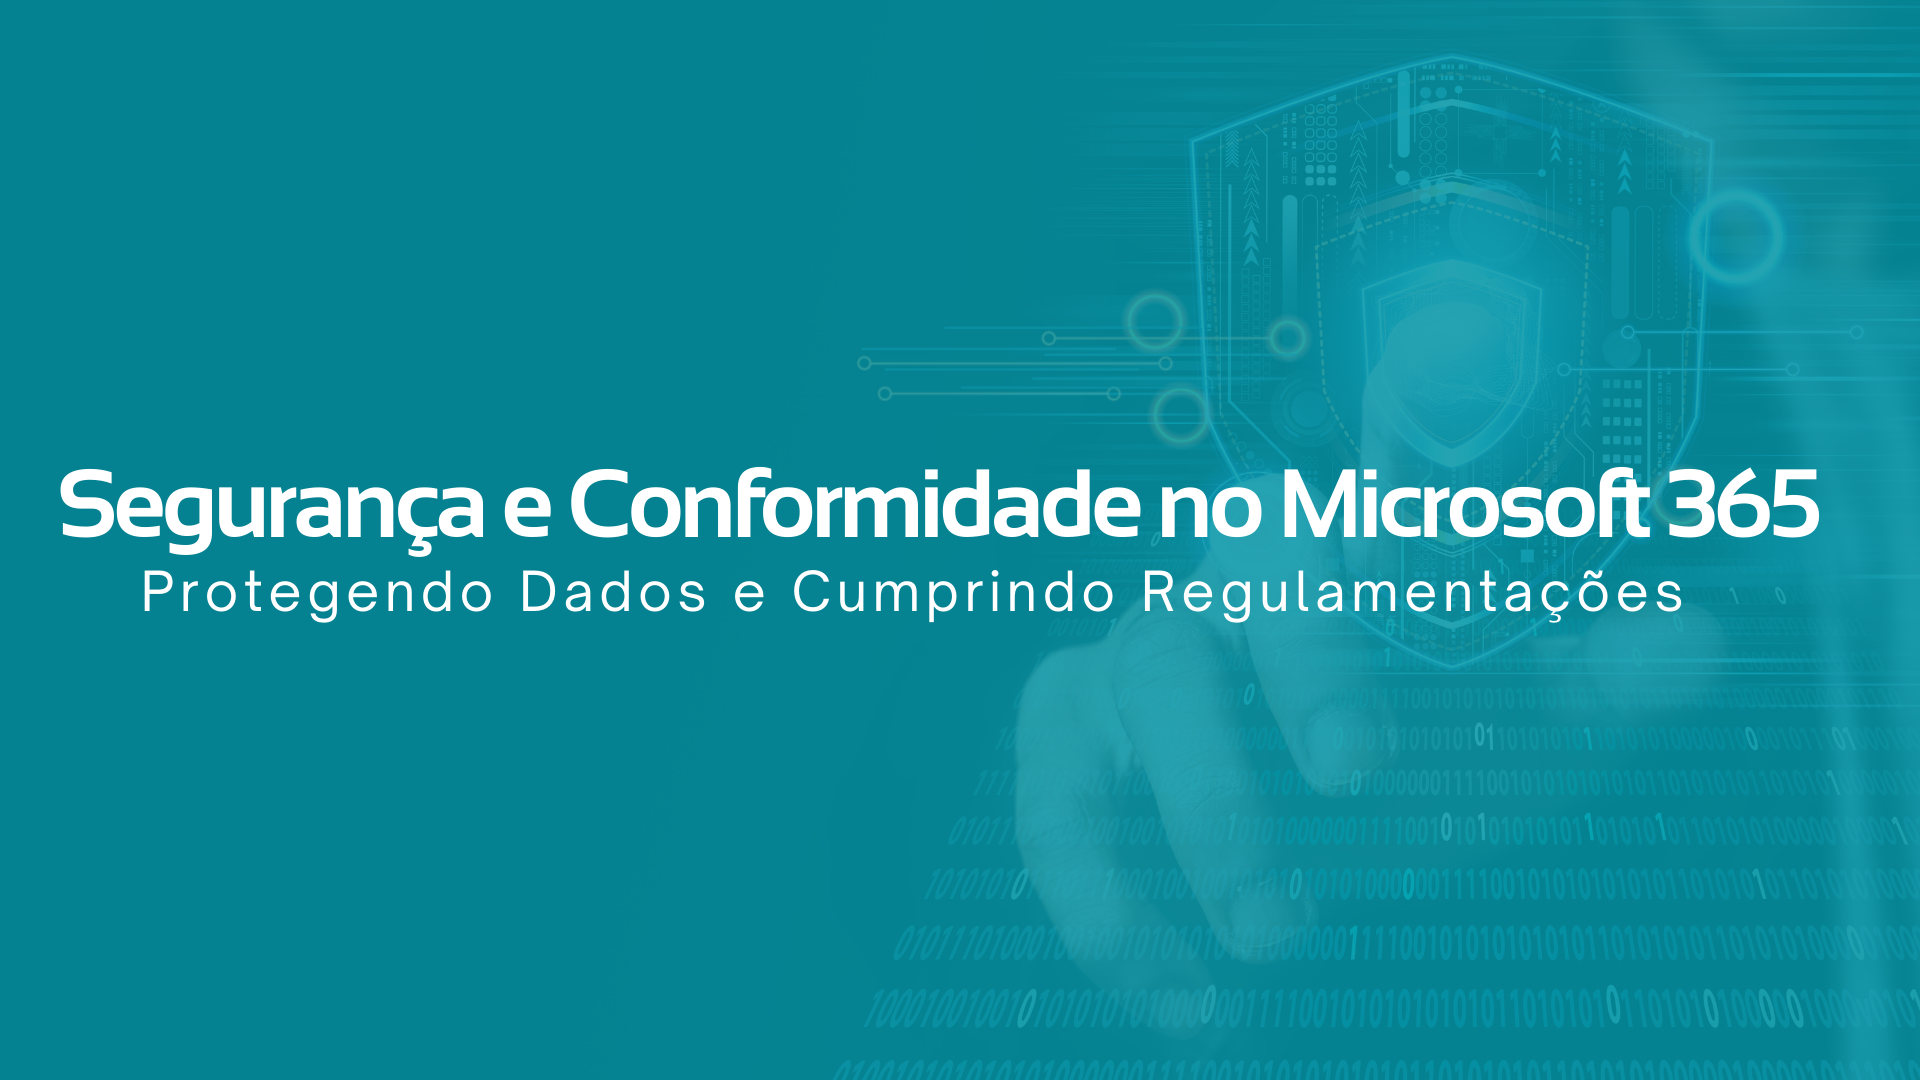 Segurança e Conformidade no Microsoft 365 (2)